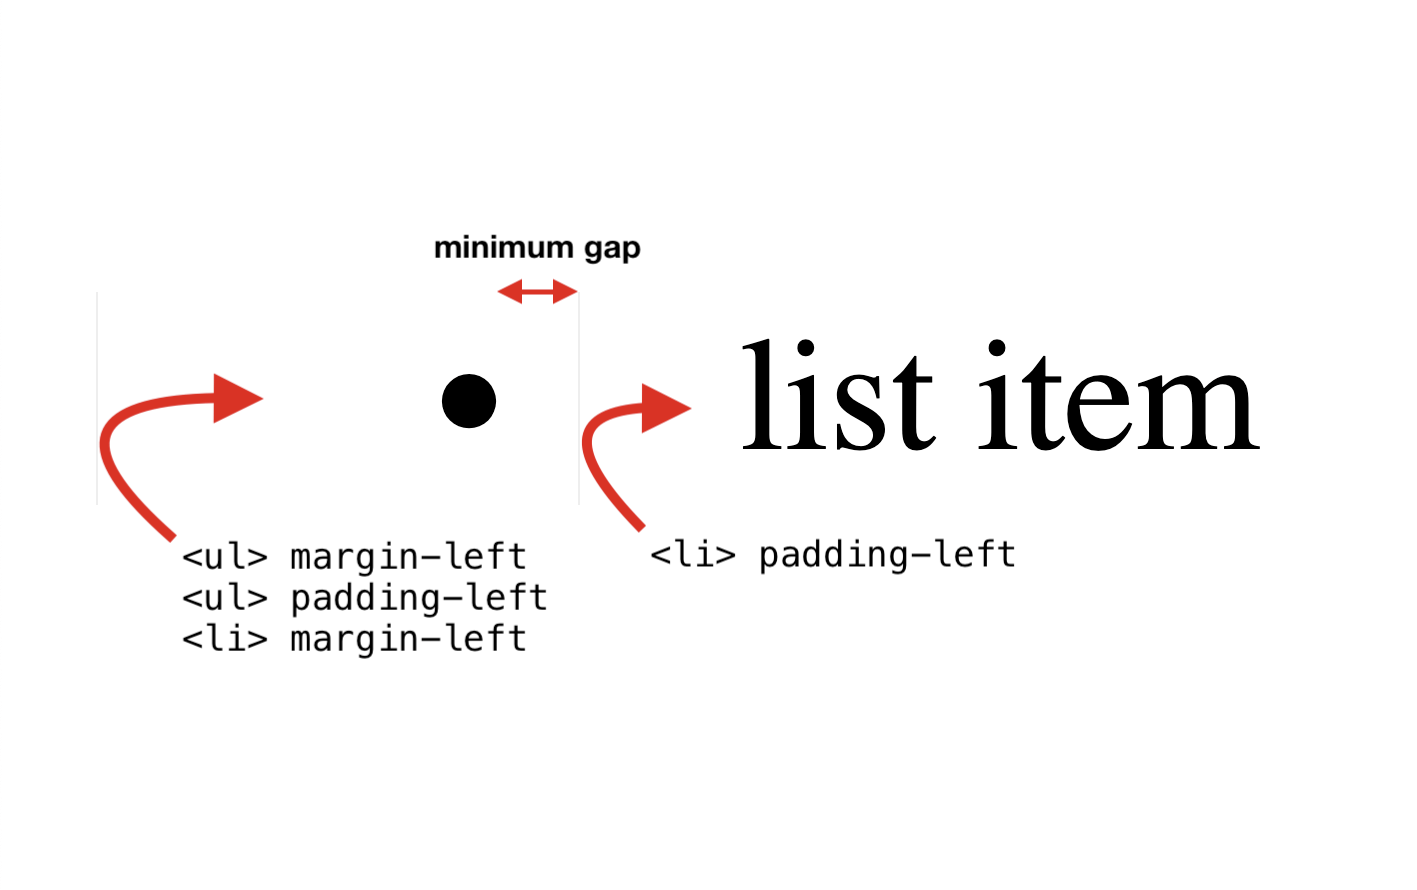 پہلی تین خصوصیات: UL مارجن-بائیں، UL پیڈنگ-بائیں، LI مارجن-بائیں. چوتھی خاصیت: LI پیڈنگ-بائیں طرف۔